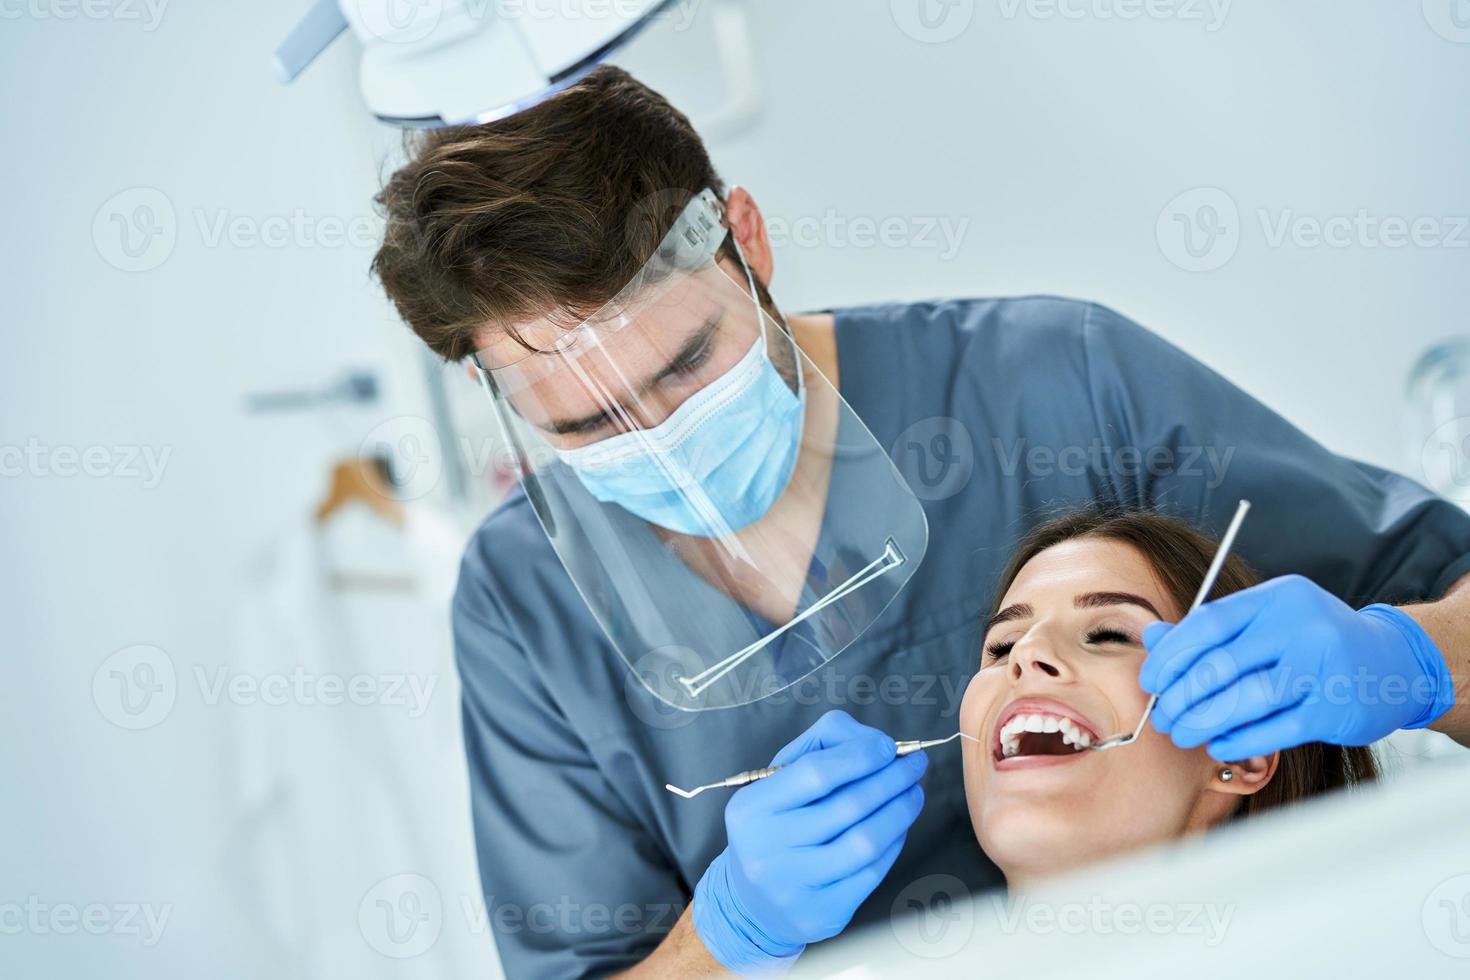 männlicher zahnarzt und frau in der zahnarztpraxis foto